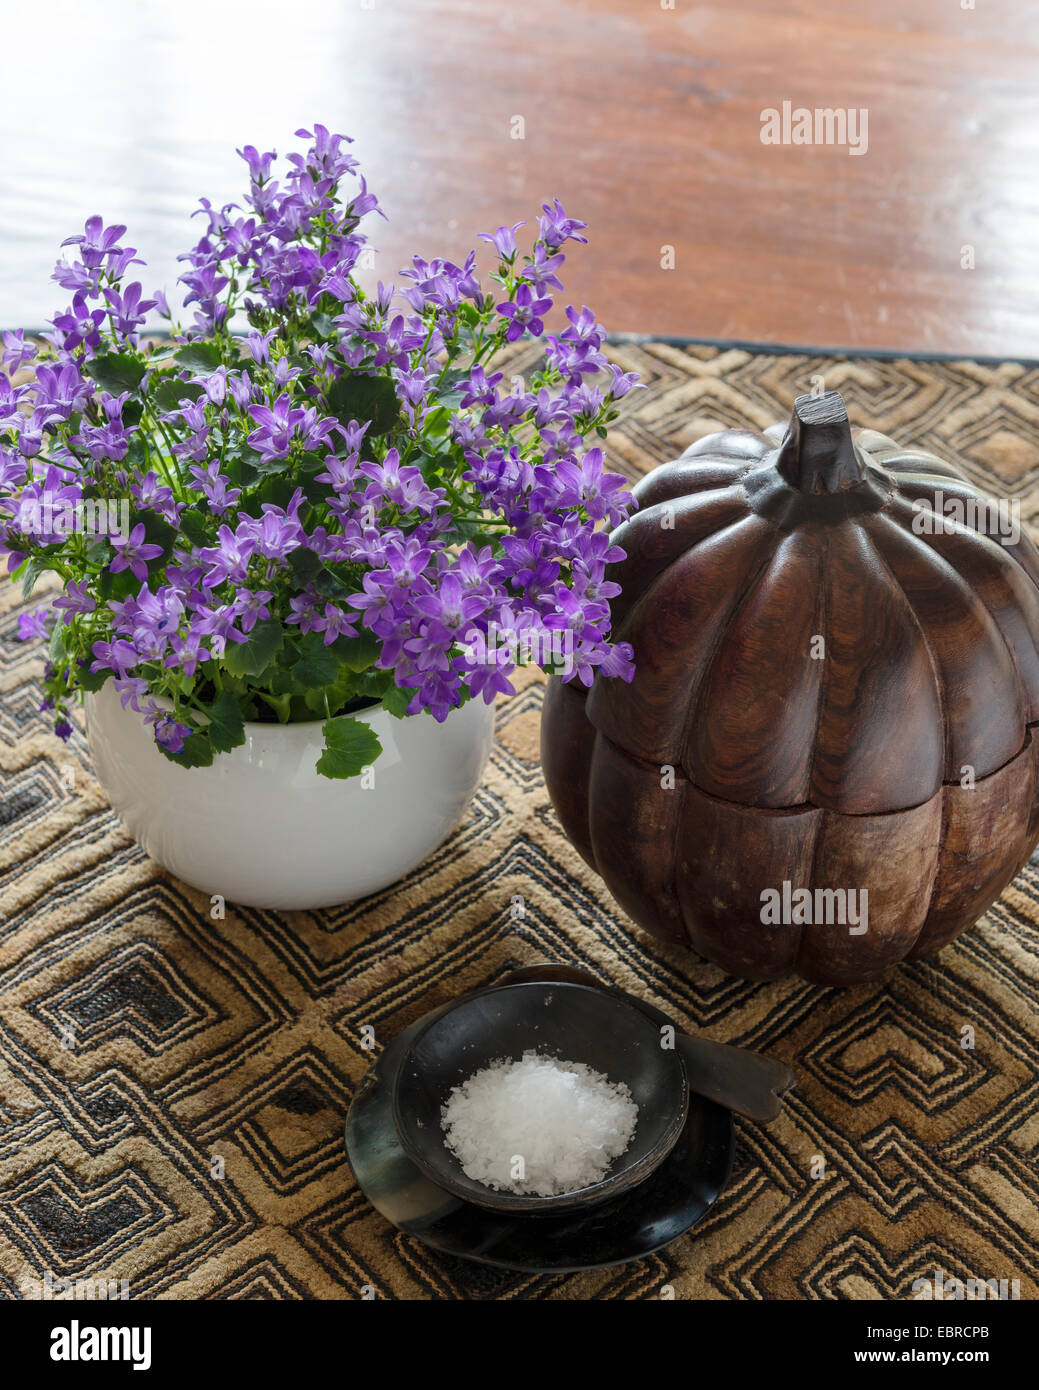 Planta con flores púrpura y sal plato con calabaza tallado de madera Foto de stock